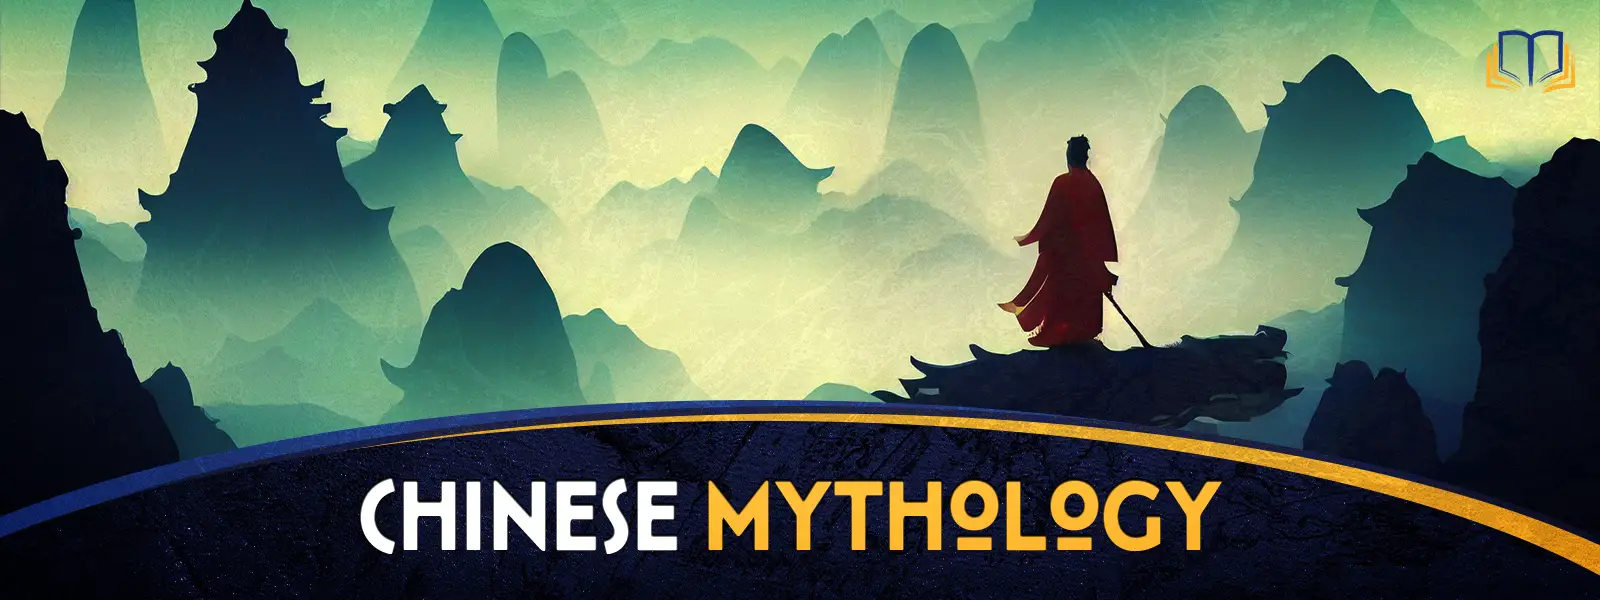 Chinese Mythology Hub Landscape